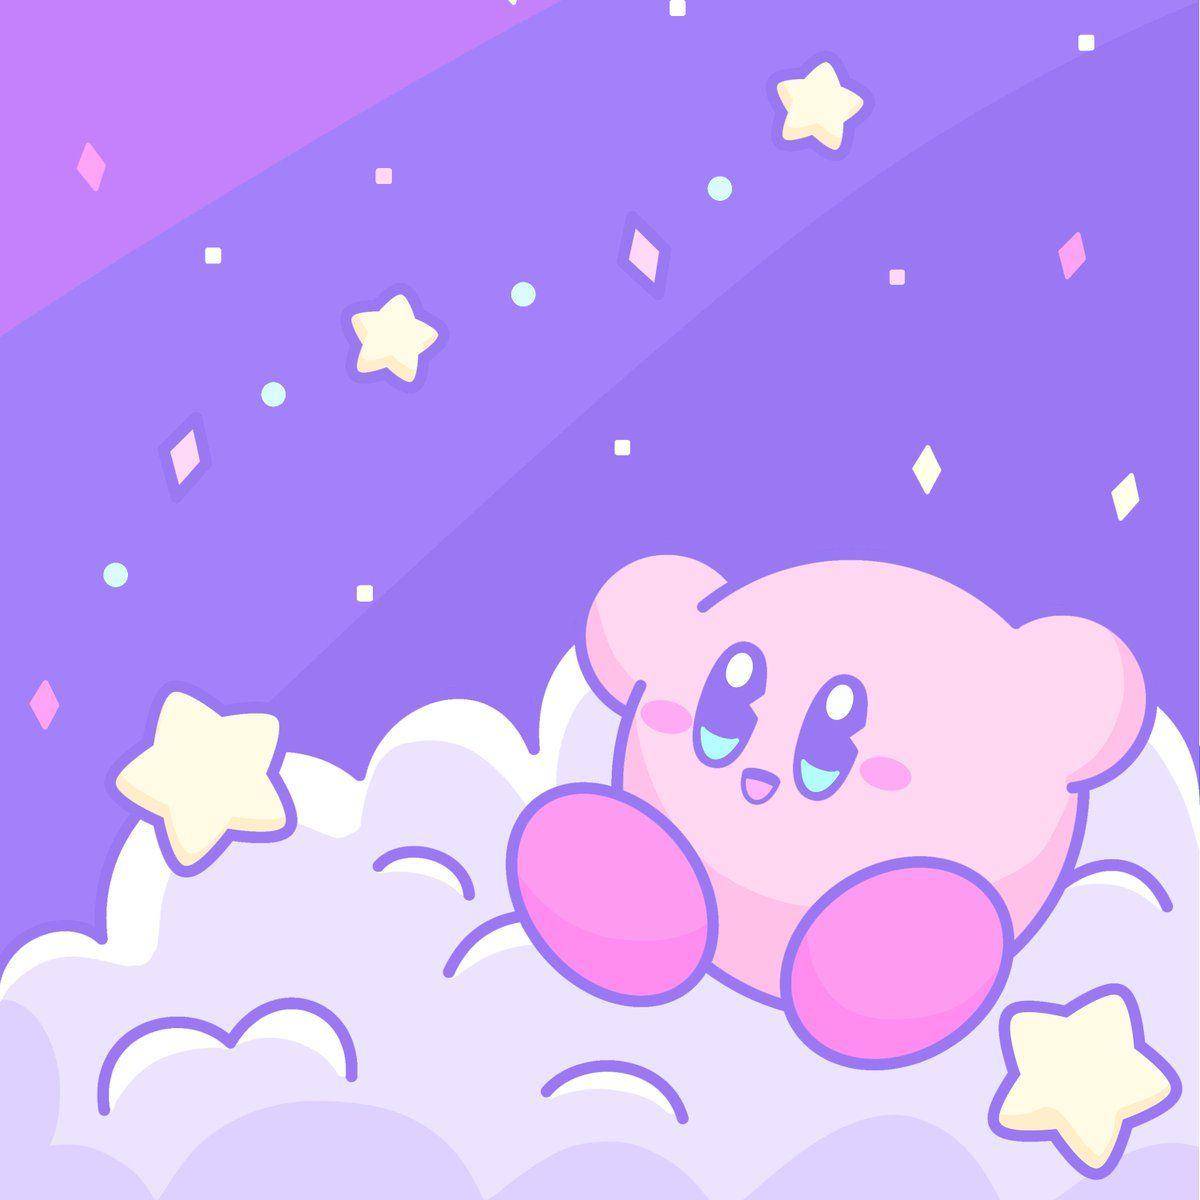 Các hình nền Kirby trong tông màu tím xinh xắn đang chờ đón bạn. Cùng thưởng thức bộ sưu tập những hình ảnh đáng yêu này để tạo cho màn hình của bạn thêm phần nổi bật và đáng yêu hơn.